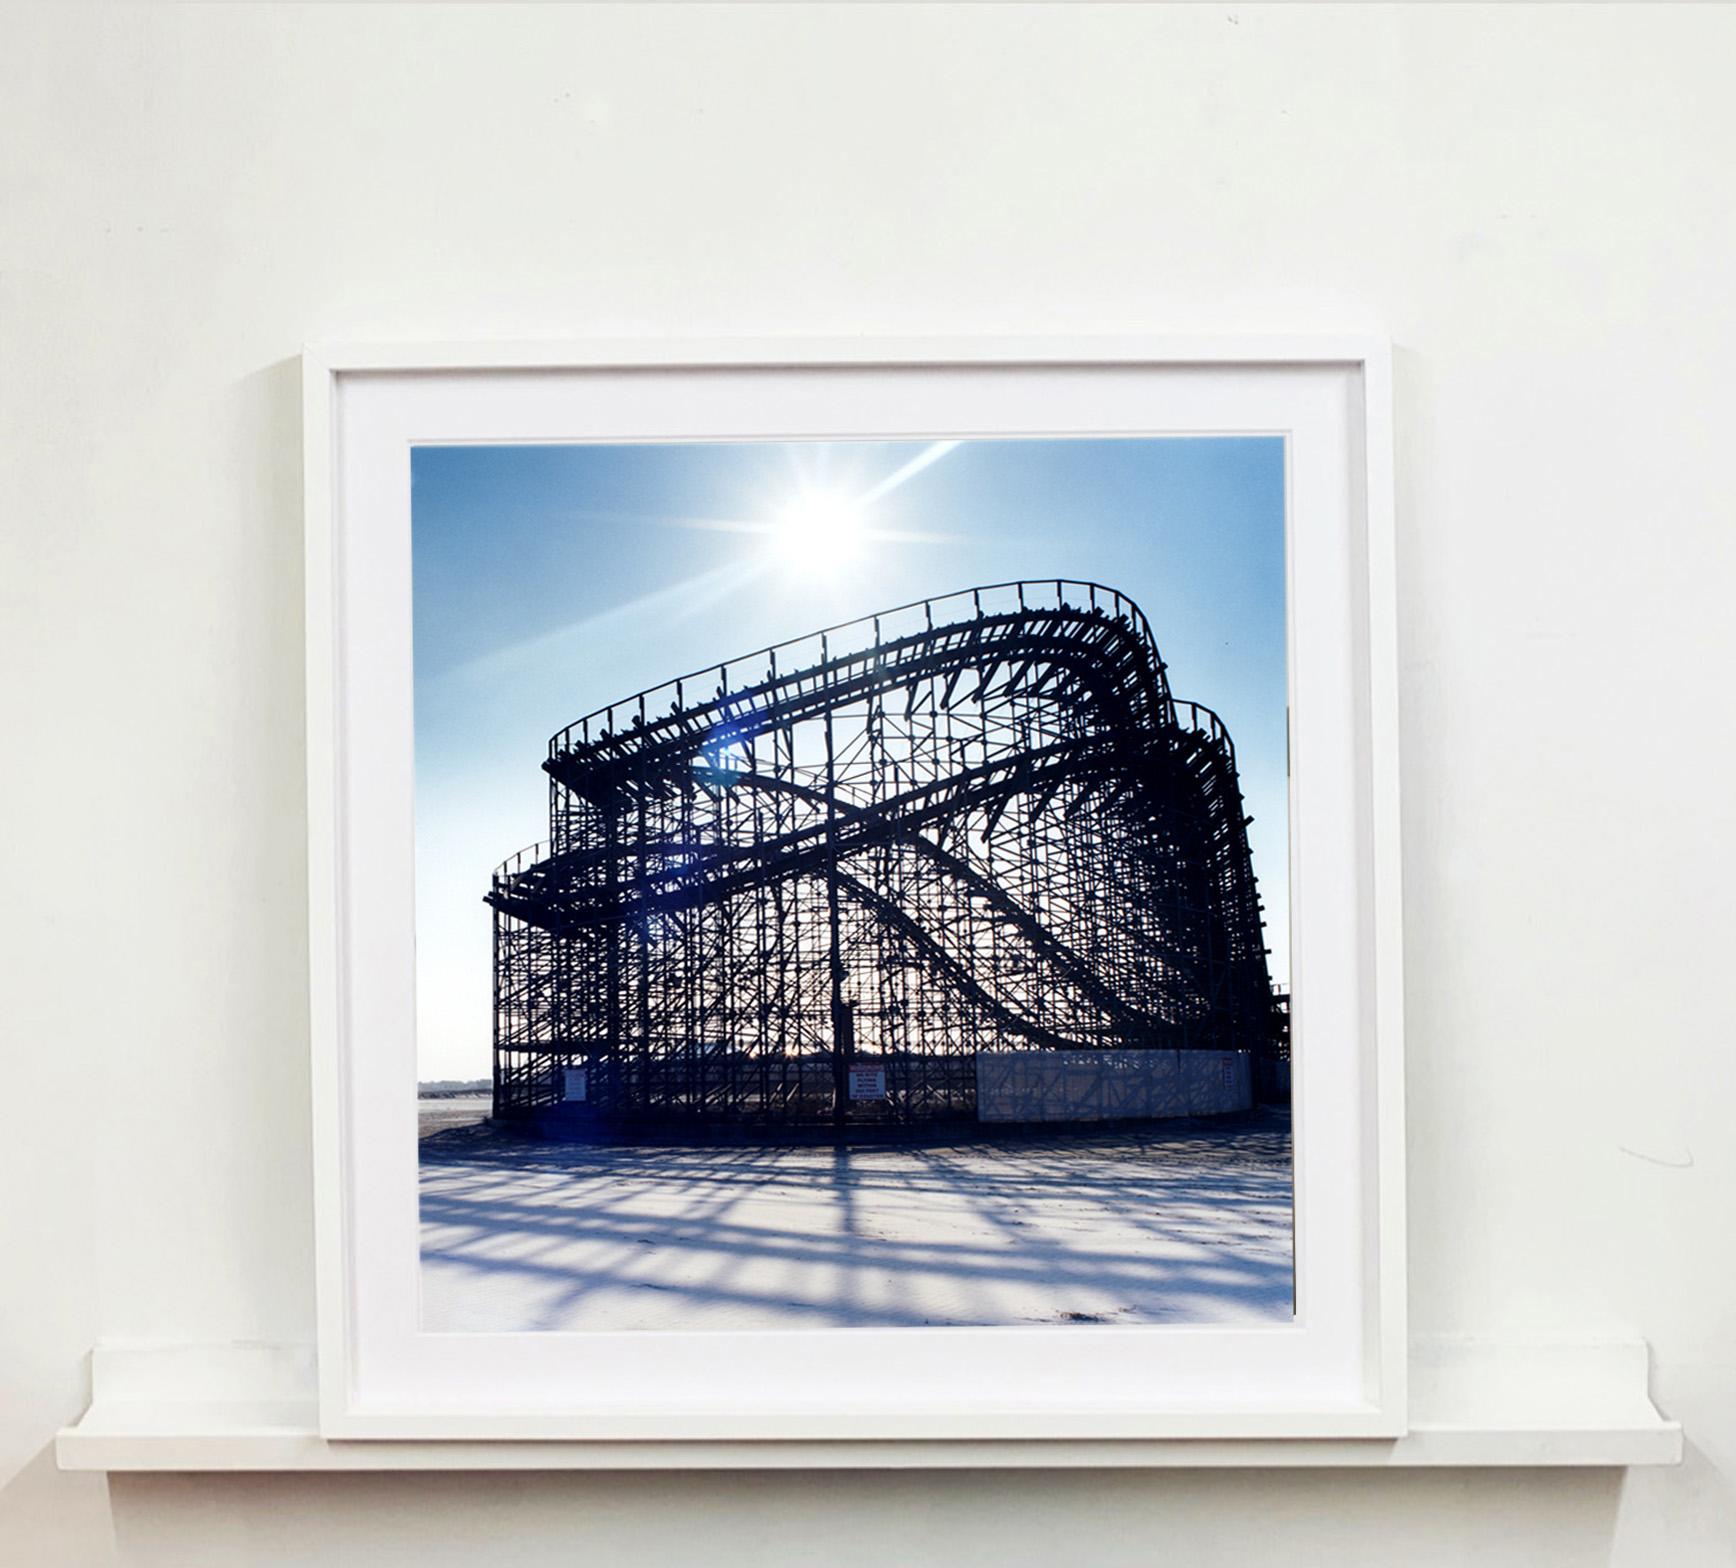 The Great White Rollercoaster, cette belle pièce atmosphérique a été prise à Wildwood, dans le New Jersey, en 2013. Il y a quelque chose de paisible dans la structure qui dort sur la plage et qui contraste avec votre esprit qui vous emmène vers des